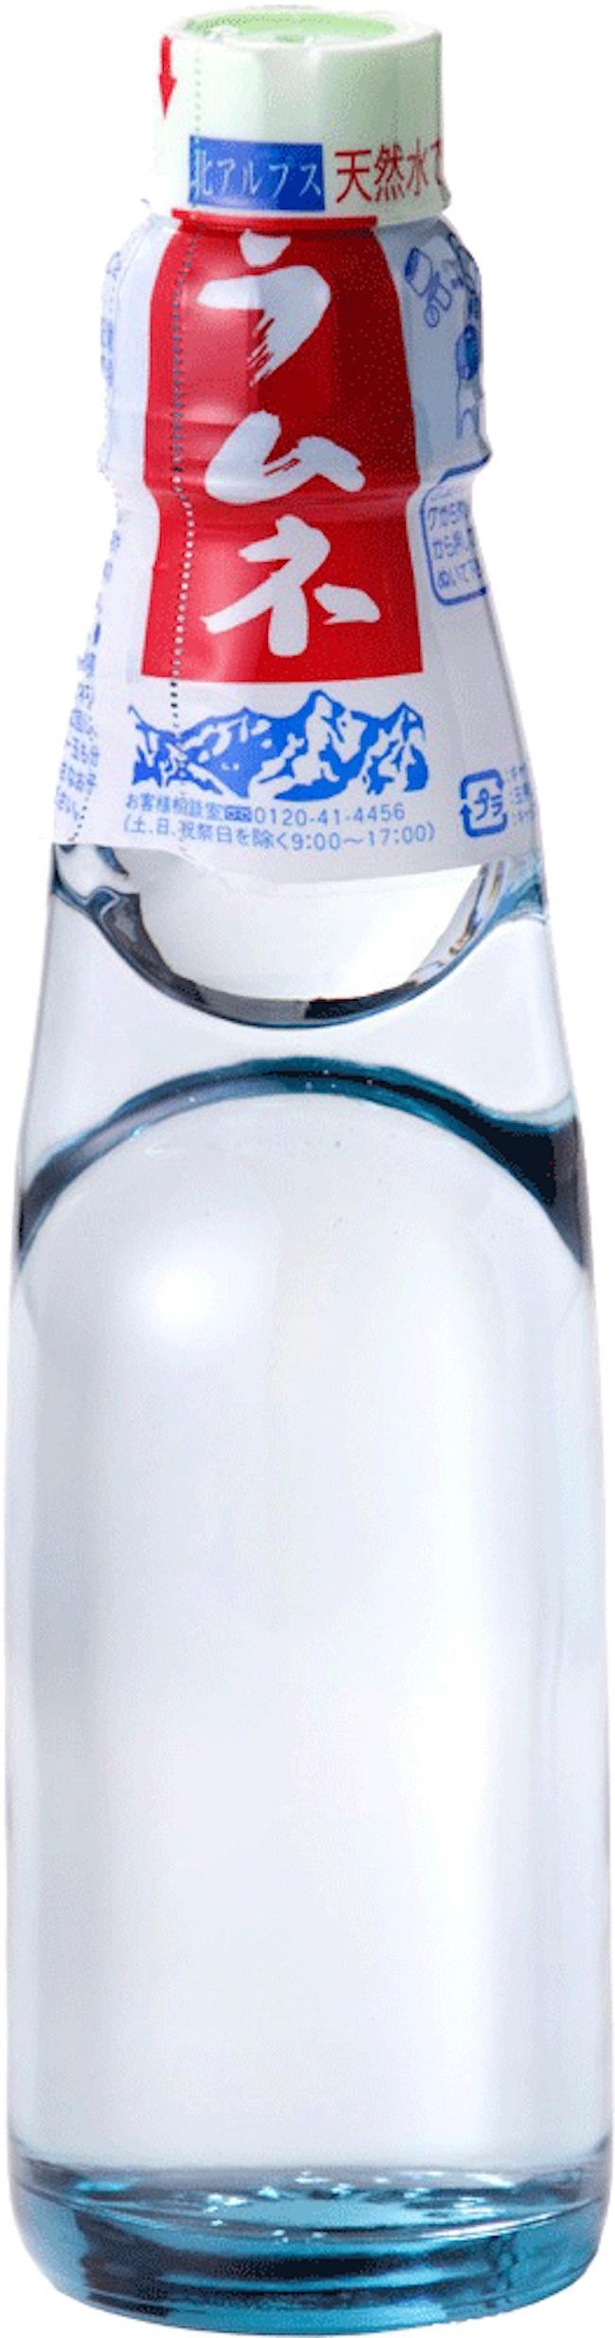 昔ながらのビー玉とガラス瓶が涼しげな「トンボラムネ」